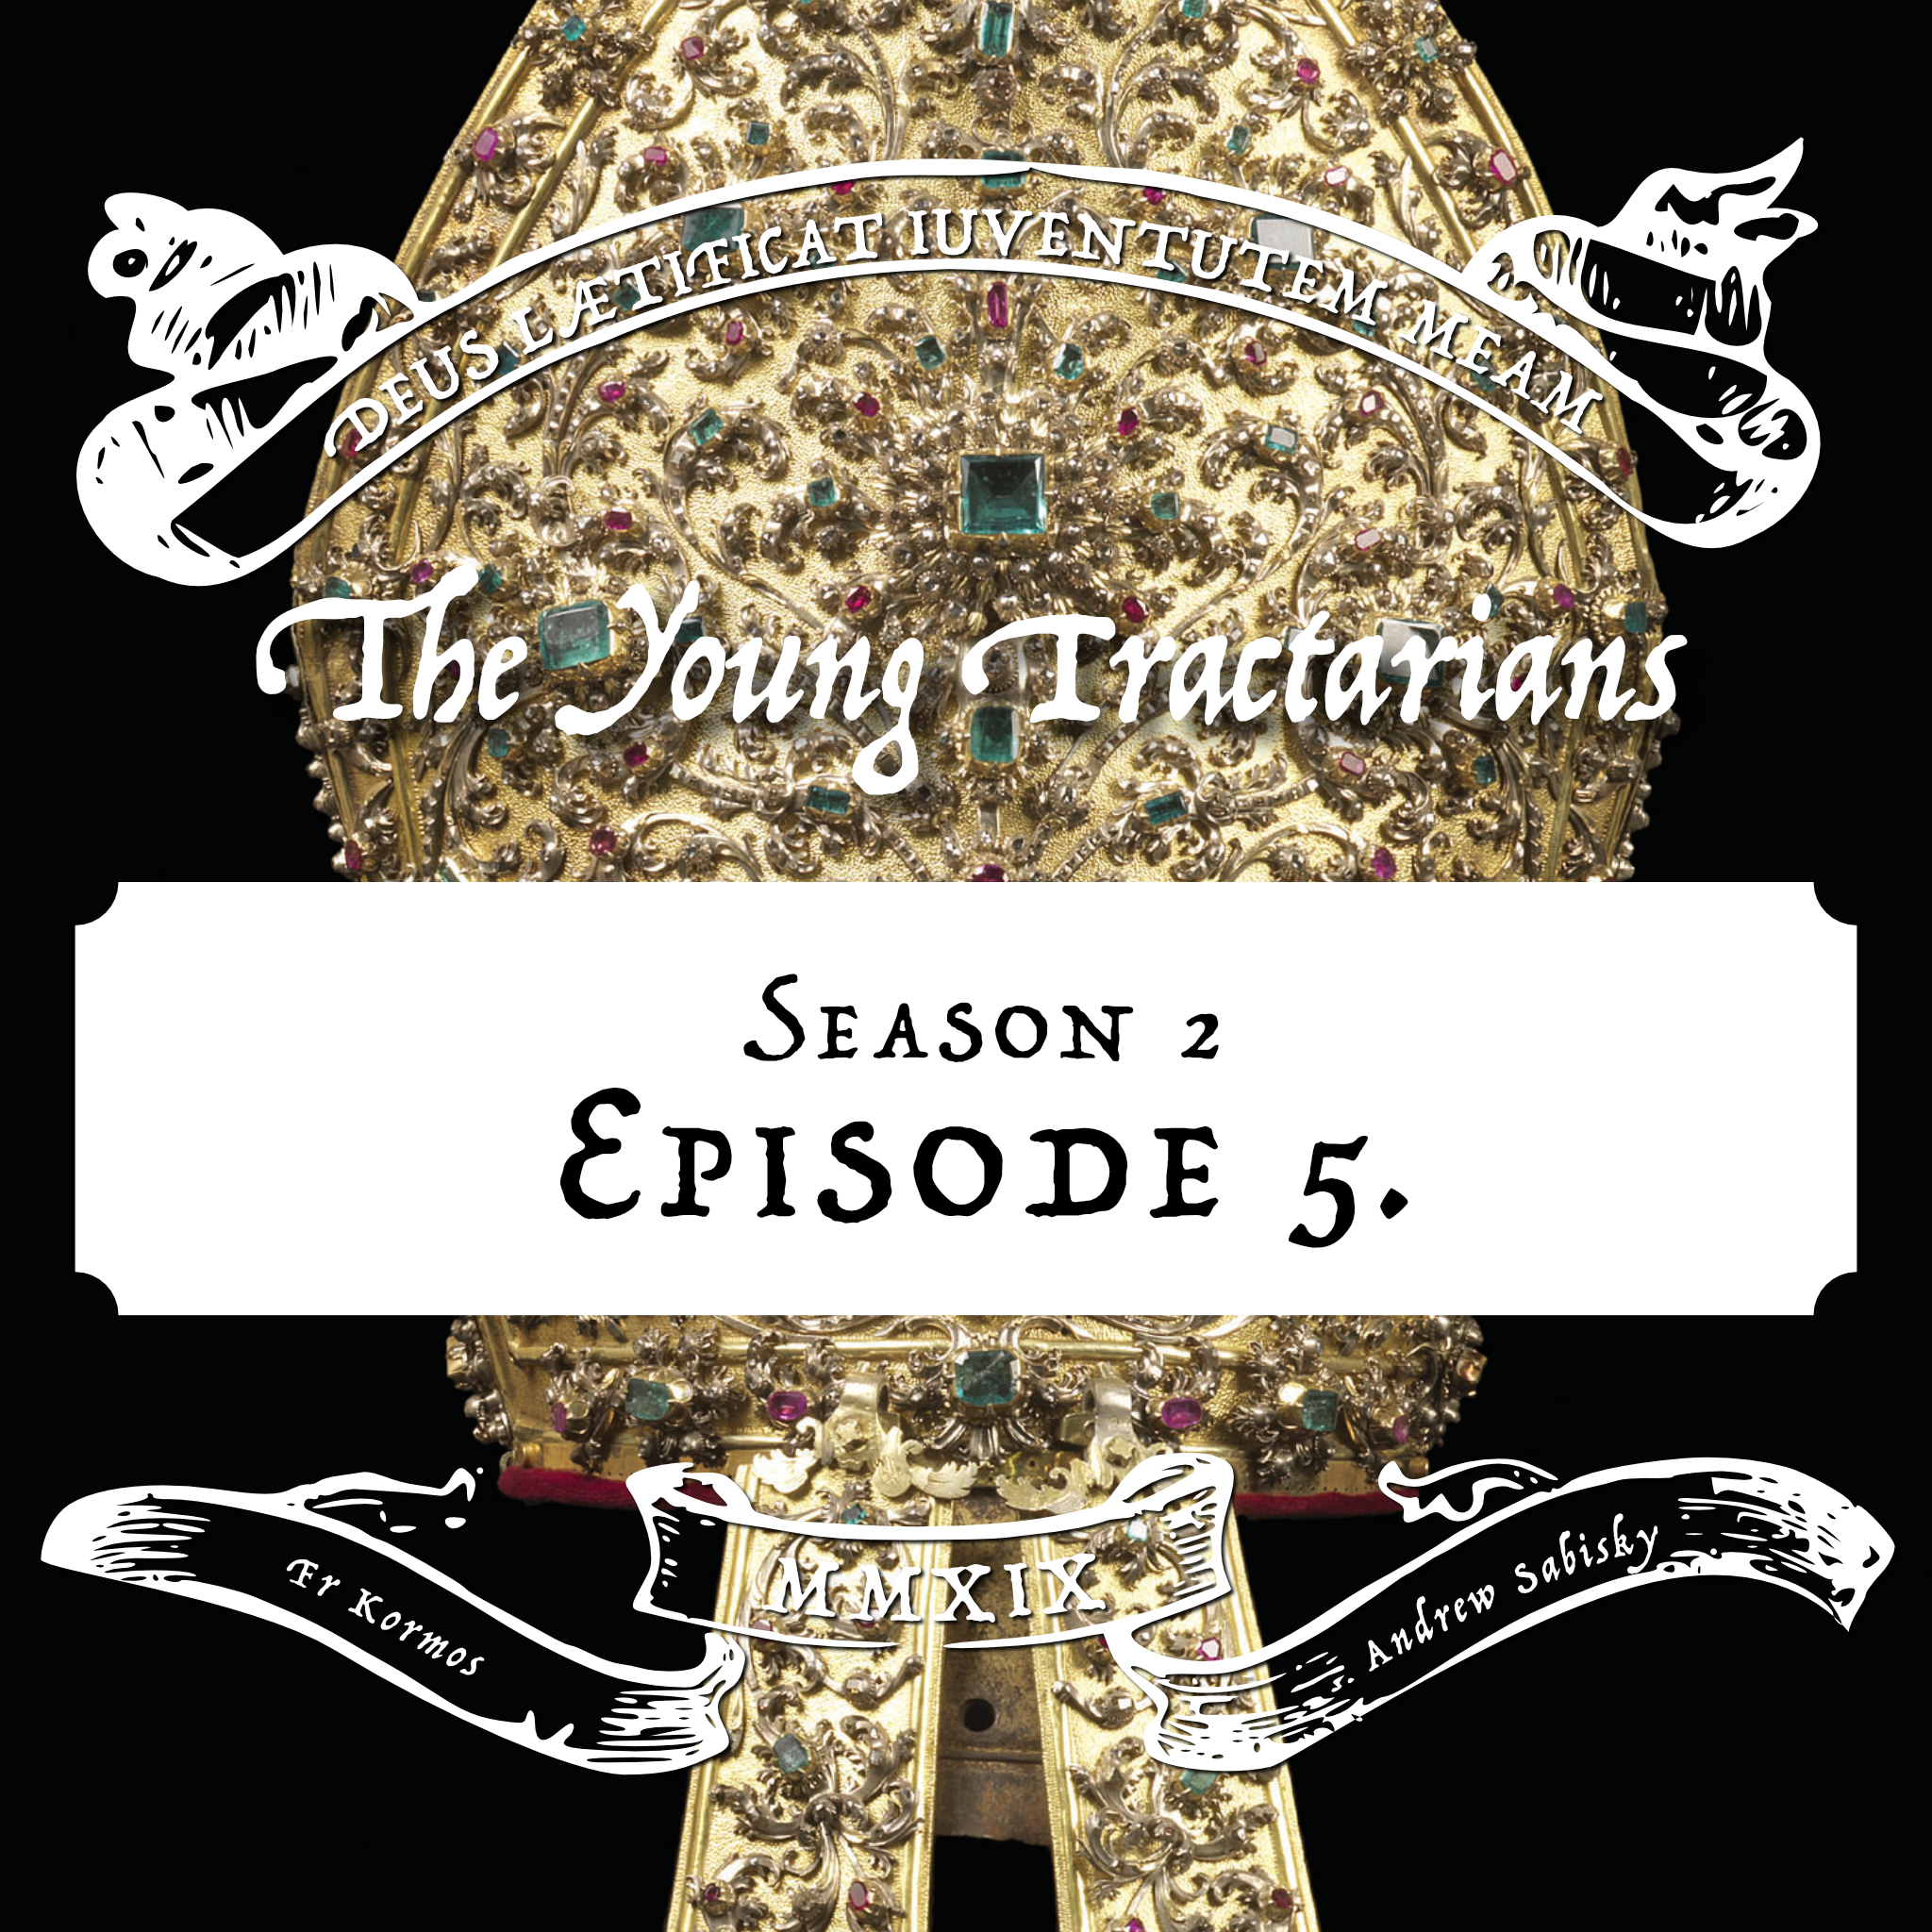 Season 2, Episode 5